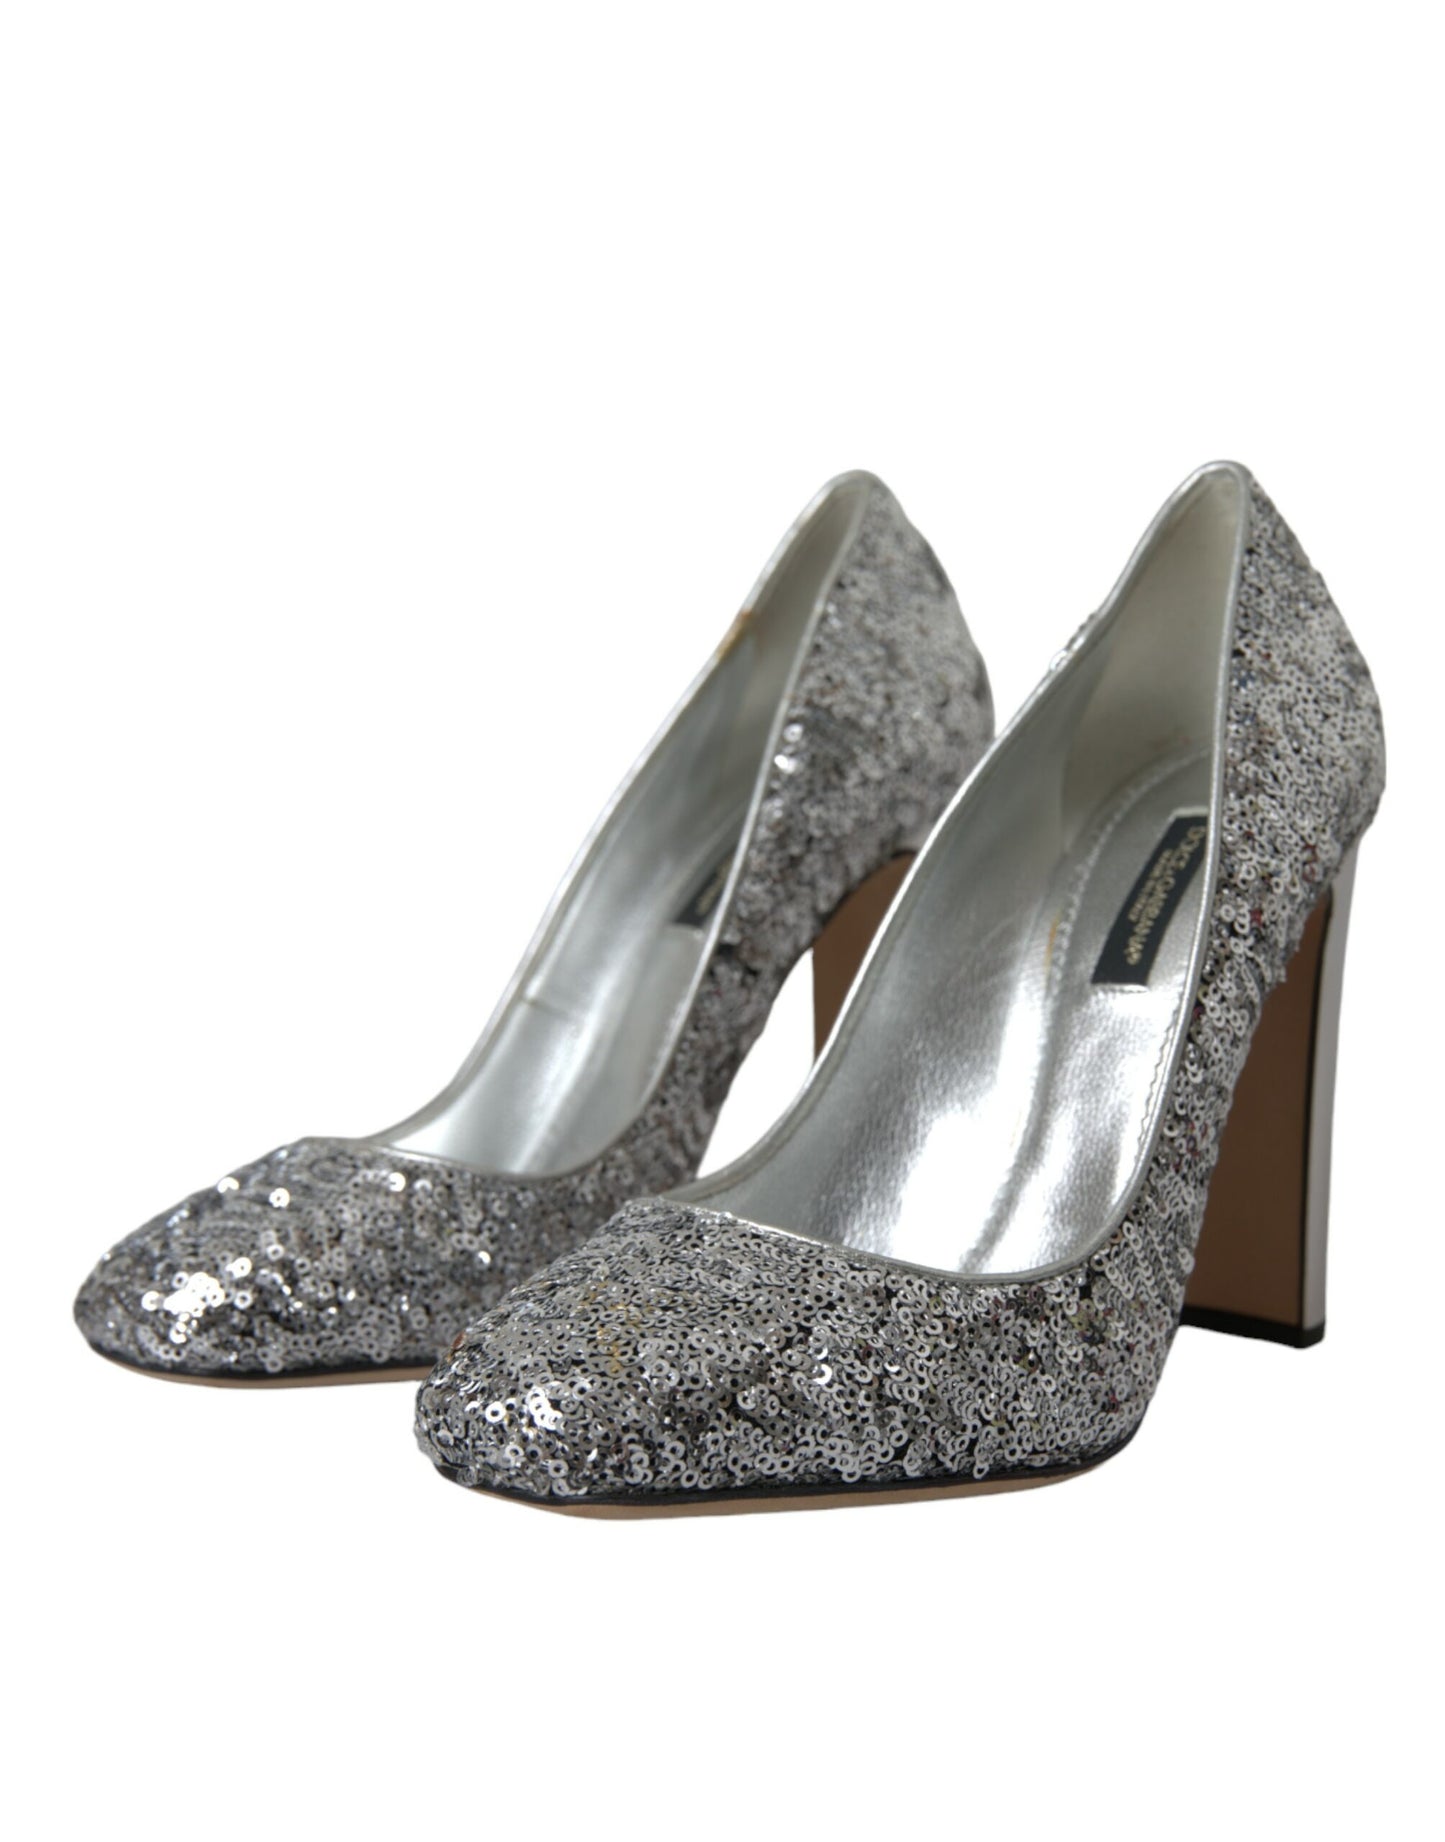 Dolce & Gabbana Silver Sequin Embellished Heels Pumps Shoes